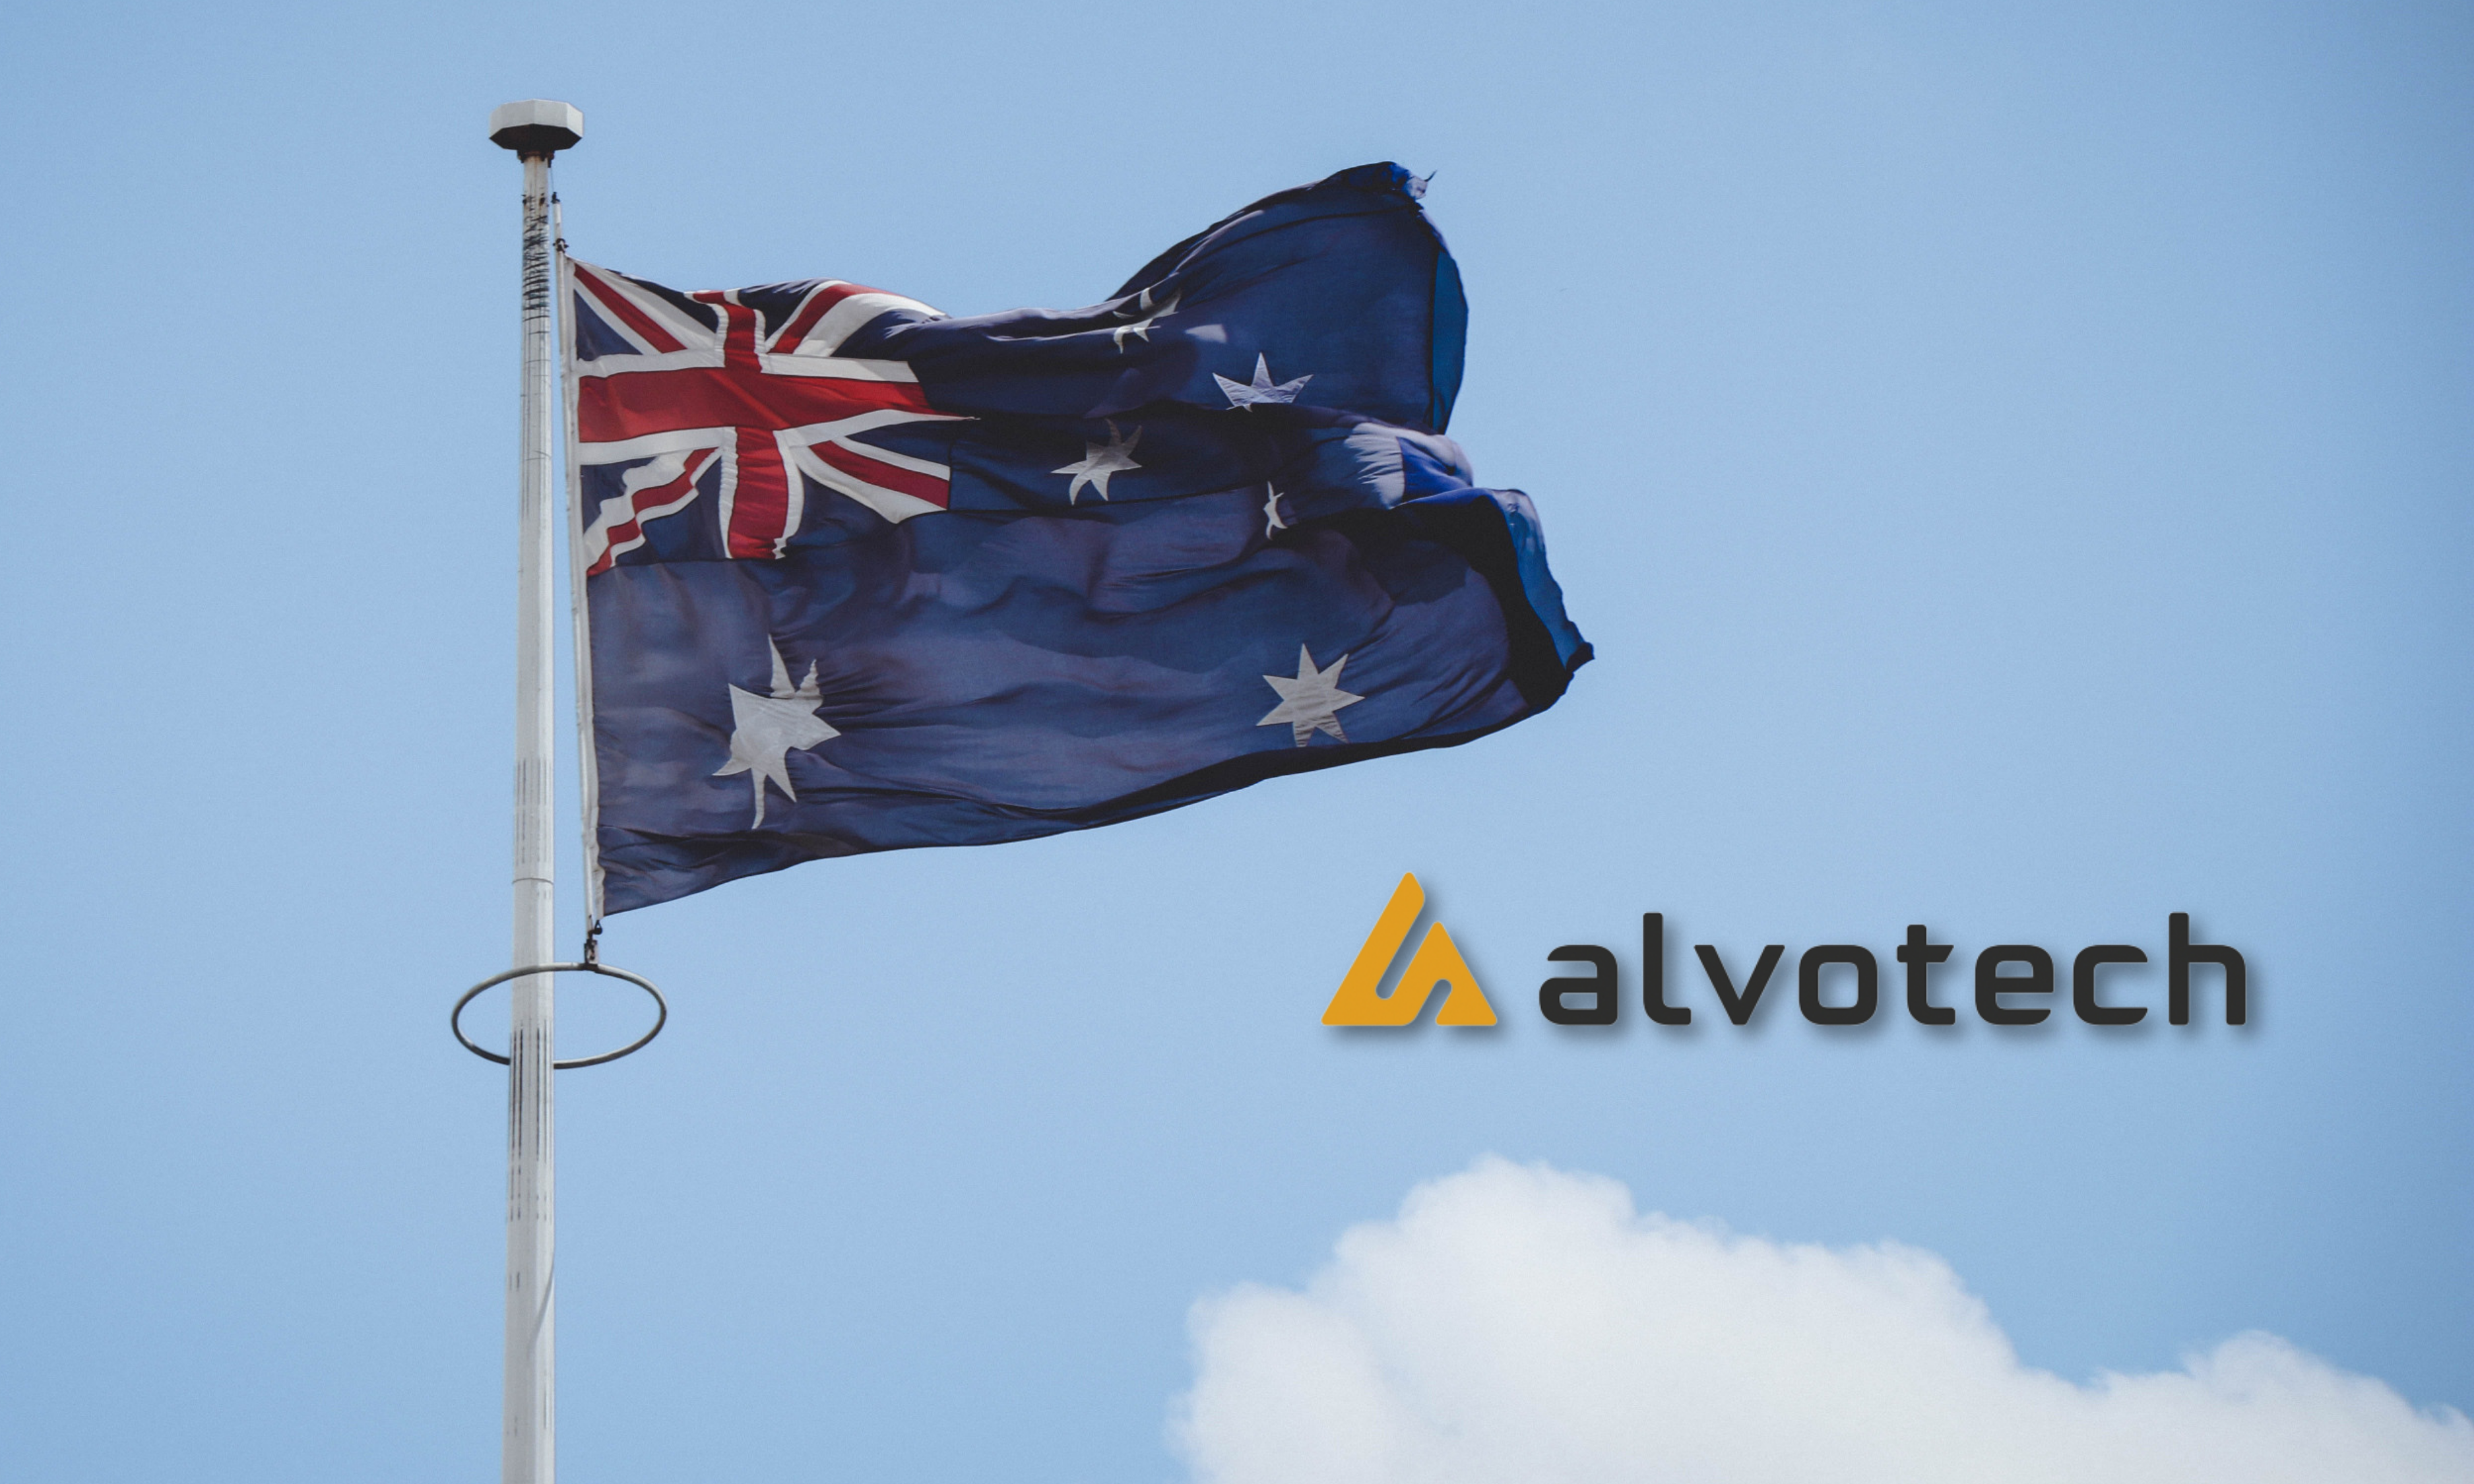 australia flag and alvotech logo